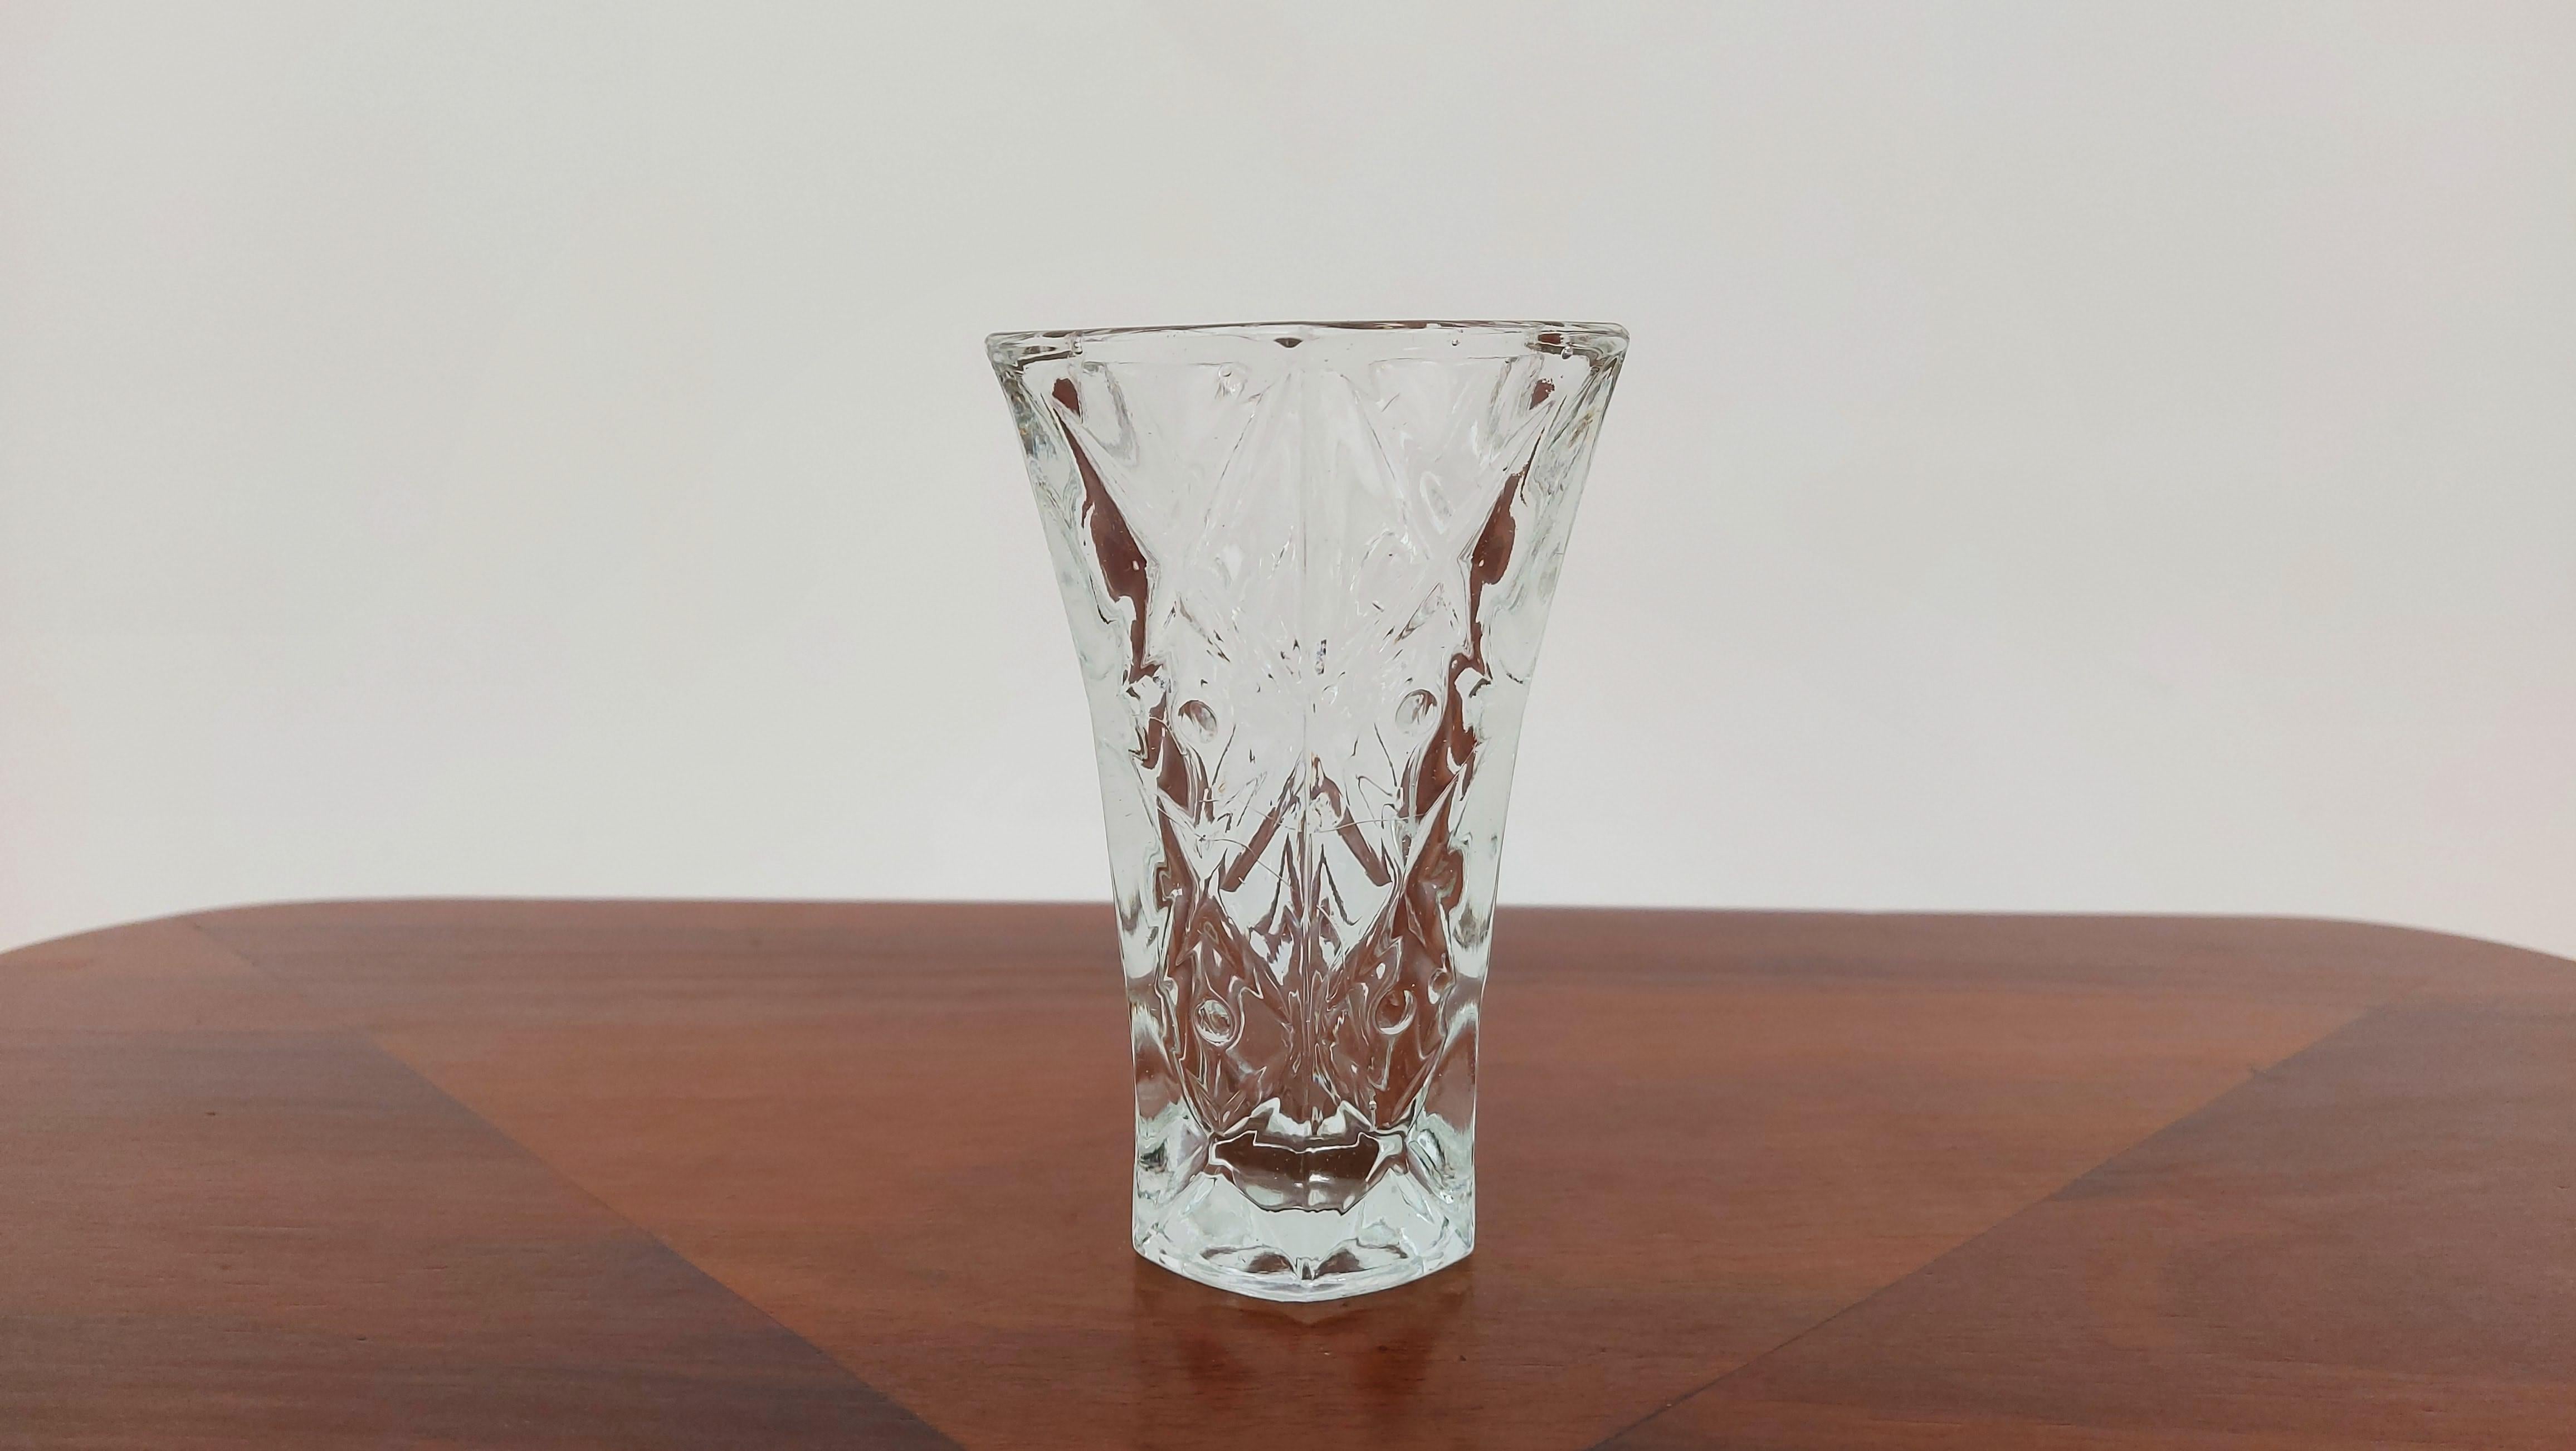 Un petit vase en verre sodique.

Fabriqué en Pologne dans les années 20/30.

Très bon état du vase, aucun dommage.

Hauteur 12,5 cm / diamètre 8 cm.